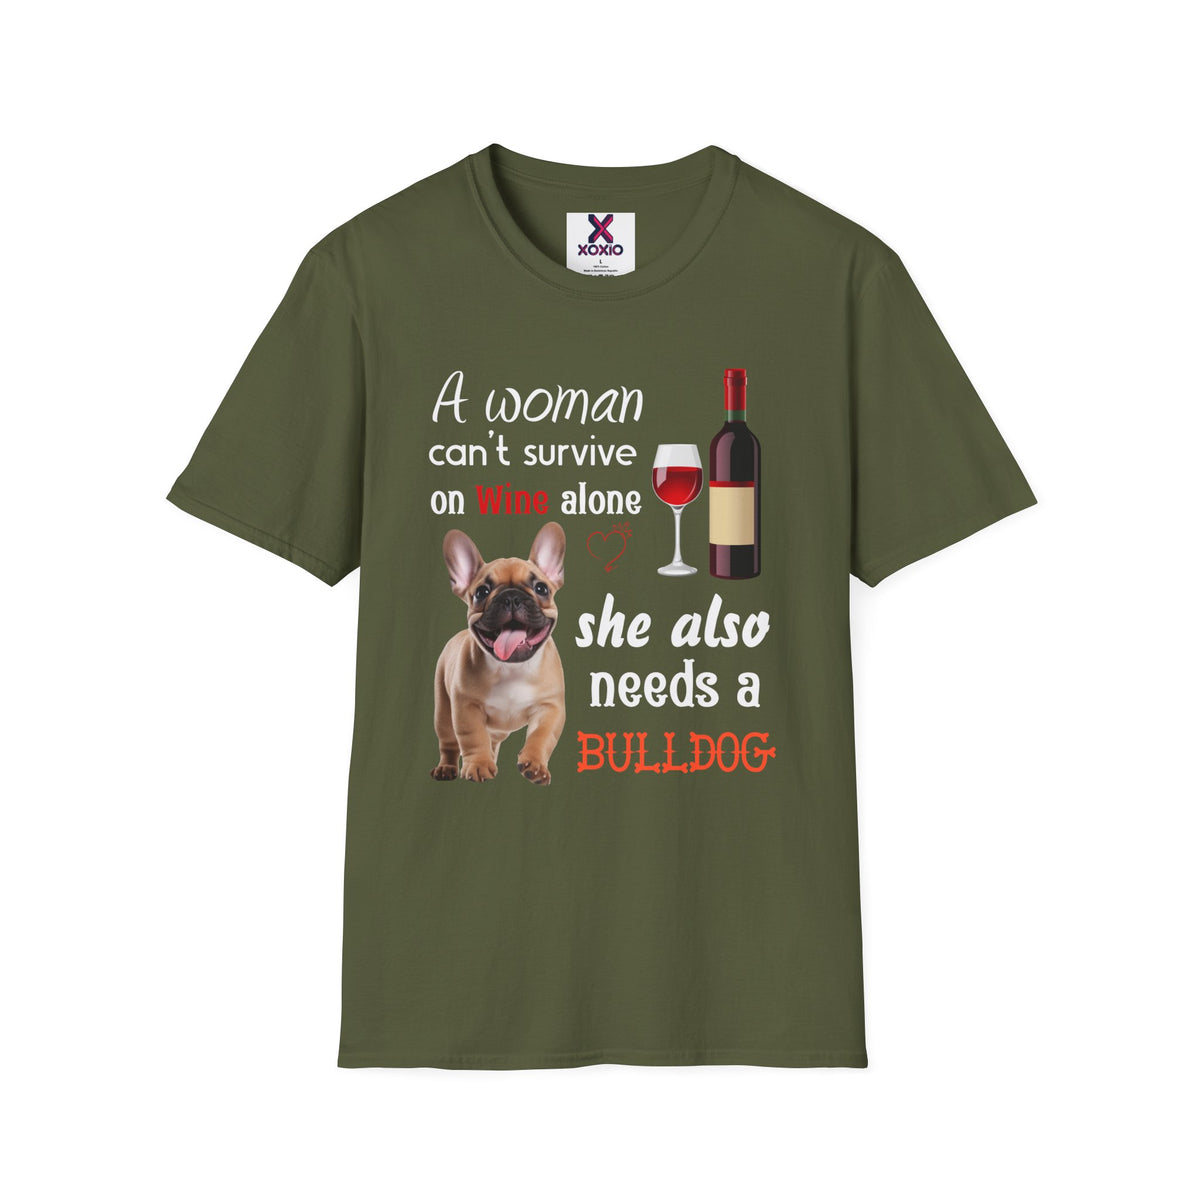 French Bulldog T-shirt / French Bulldog Dog T-shirt